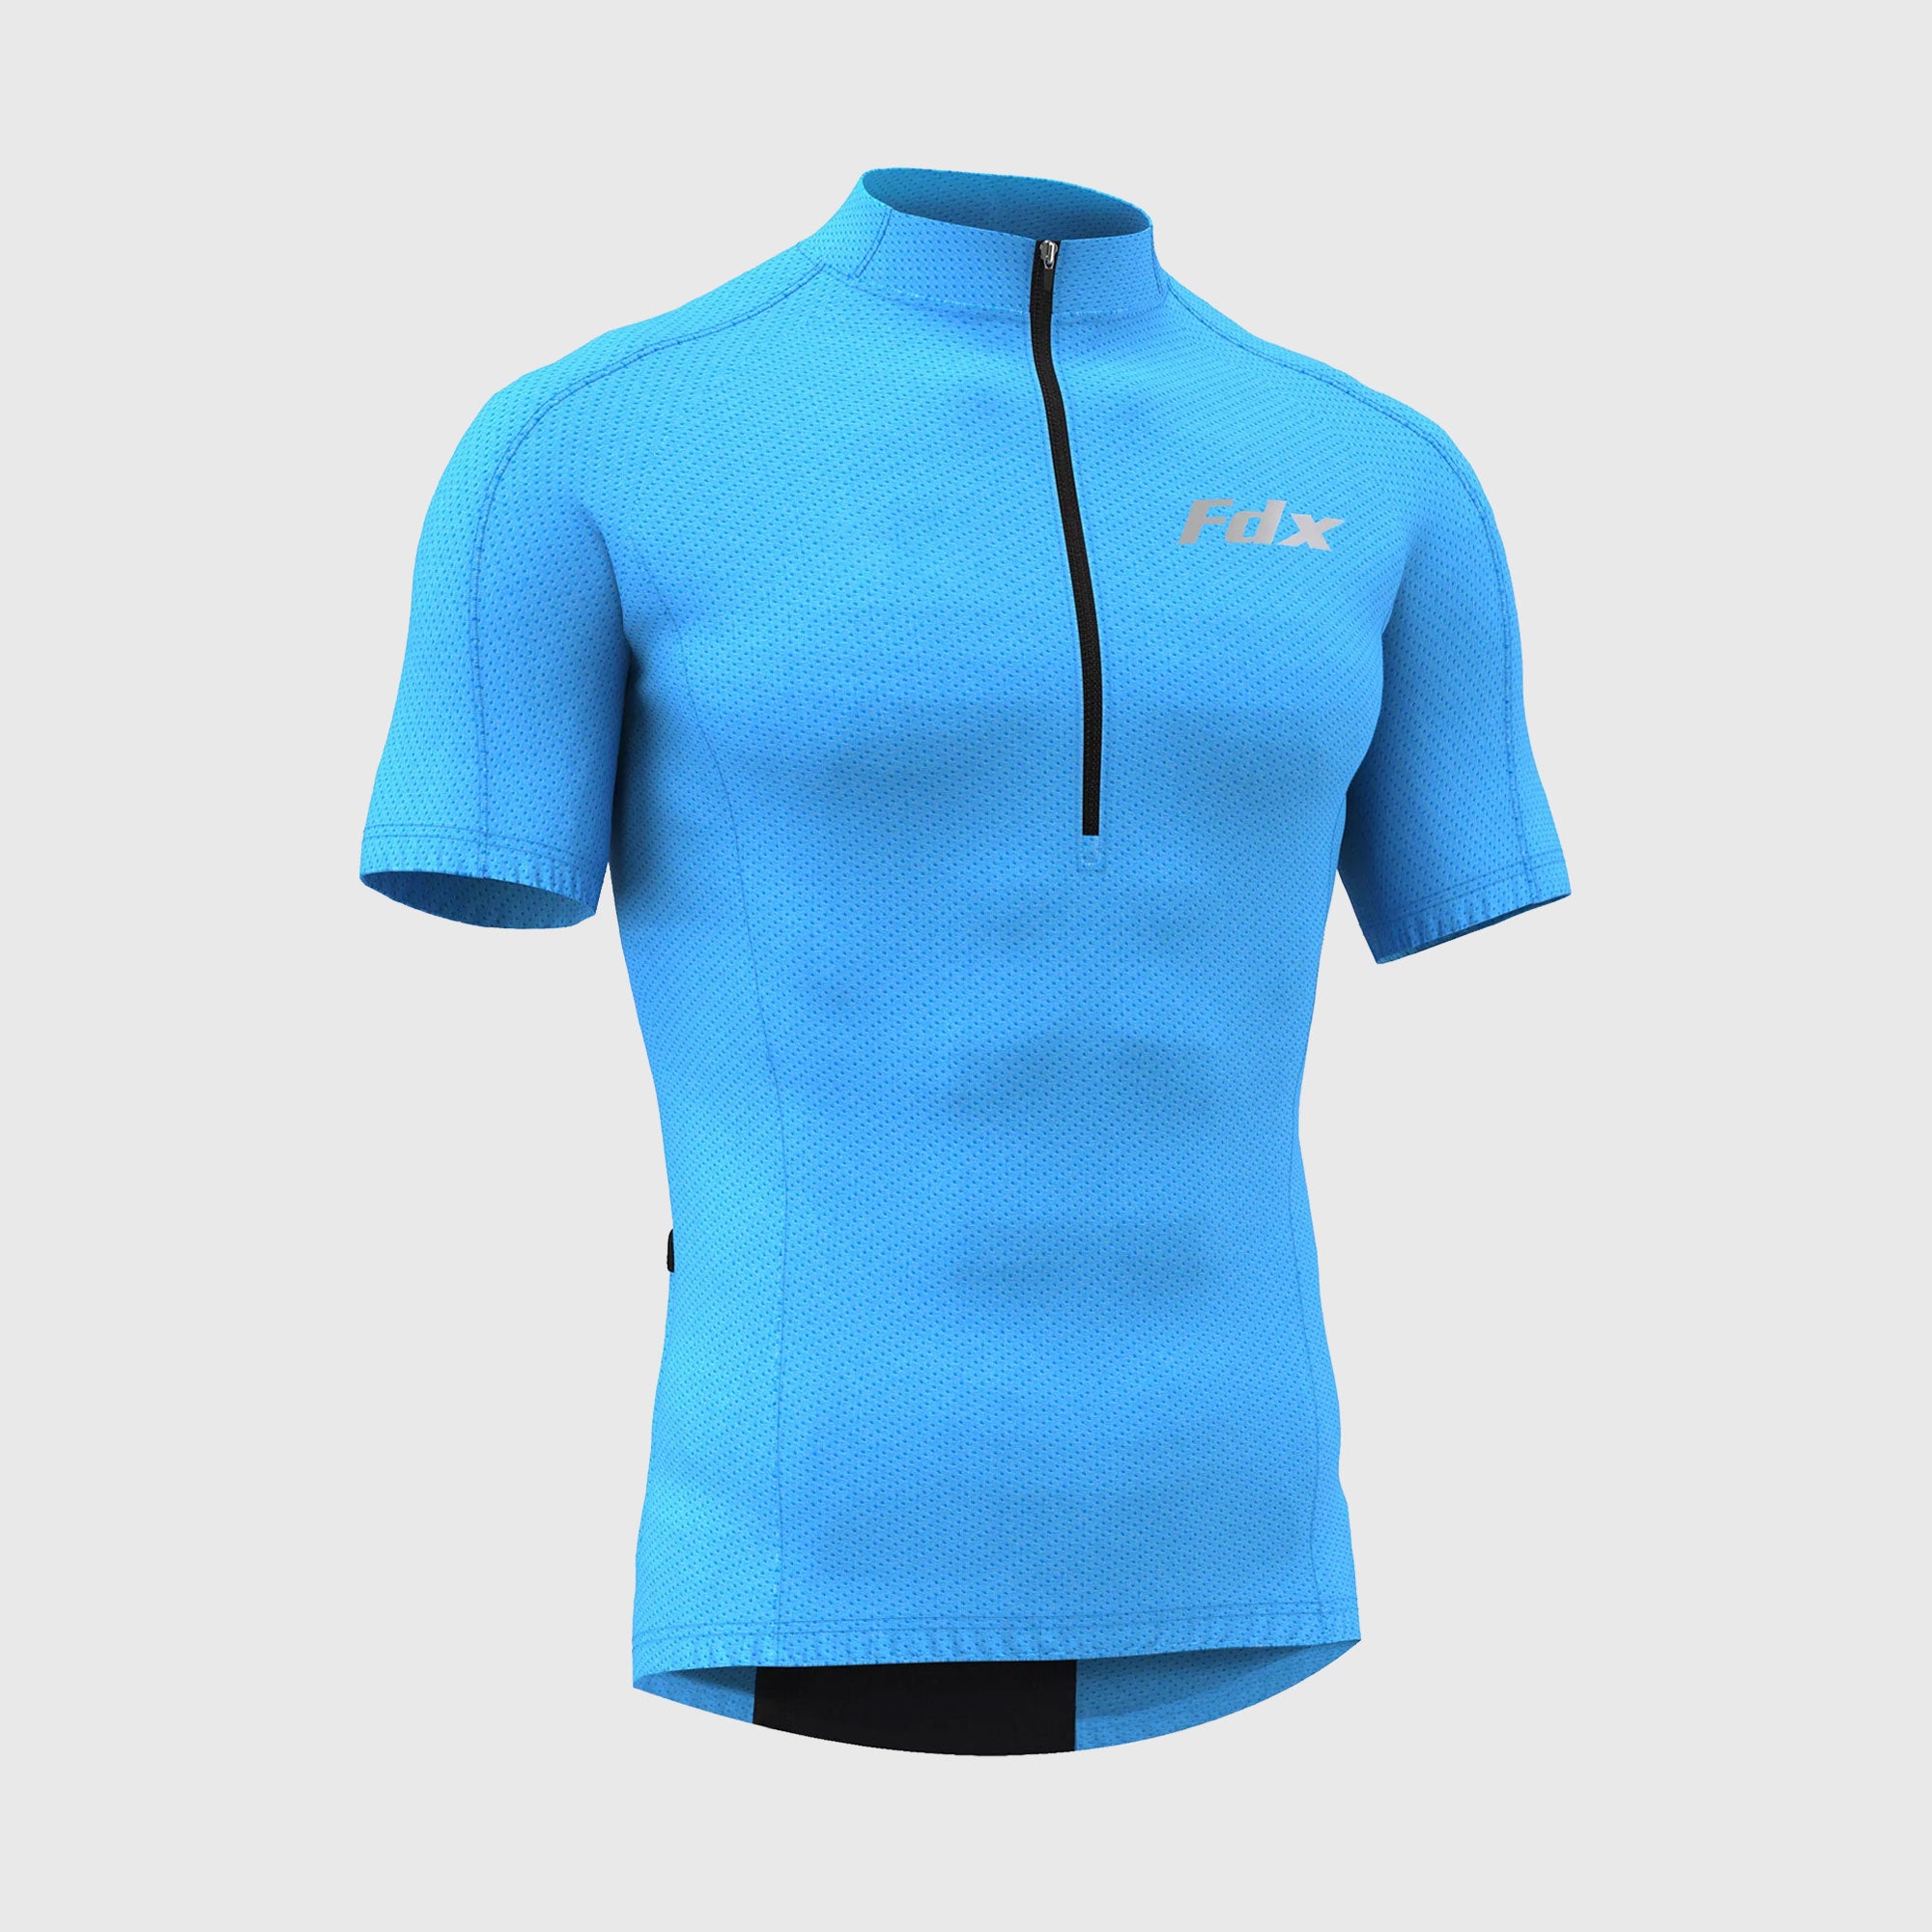 Fdx Mens Blue Short Sleeve Cycling Jersey for Summer Best Road Bike Wear Top Light Weight, Full Zipper, Pockets & Hi-viz Reflectors - Pace